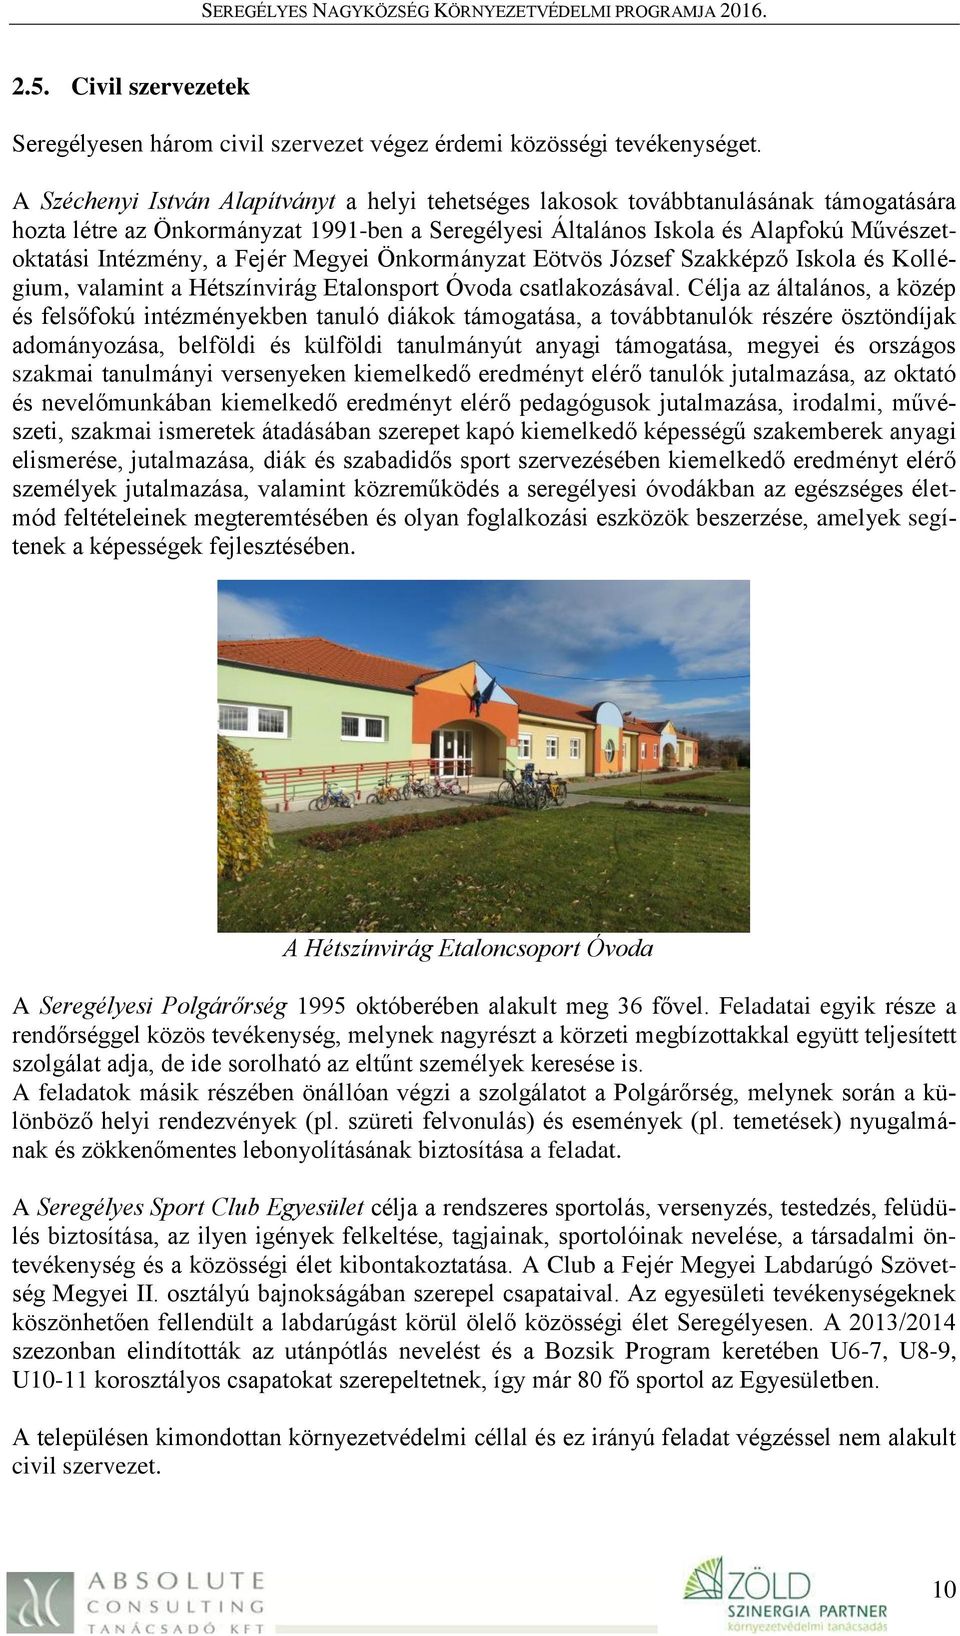 Fejér Megyei Önkormányzat Eötvös József Szakképző Iskola és Kollégium, valamint a Hétszínvirág Etalonsport Óvoda csatlakozásával.